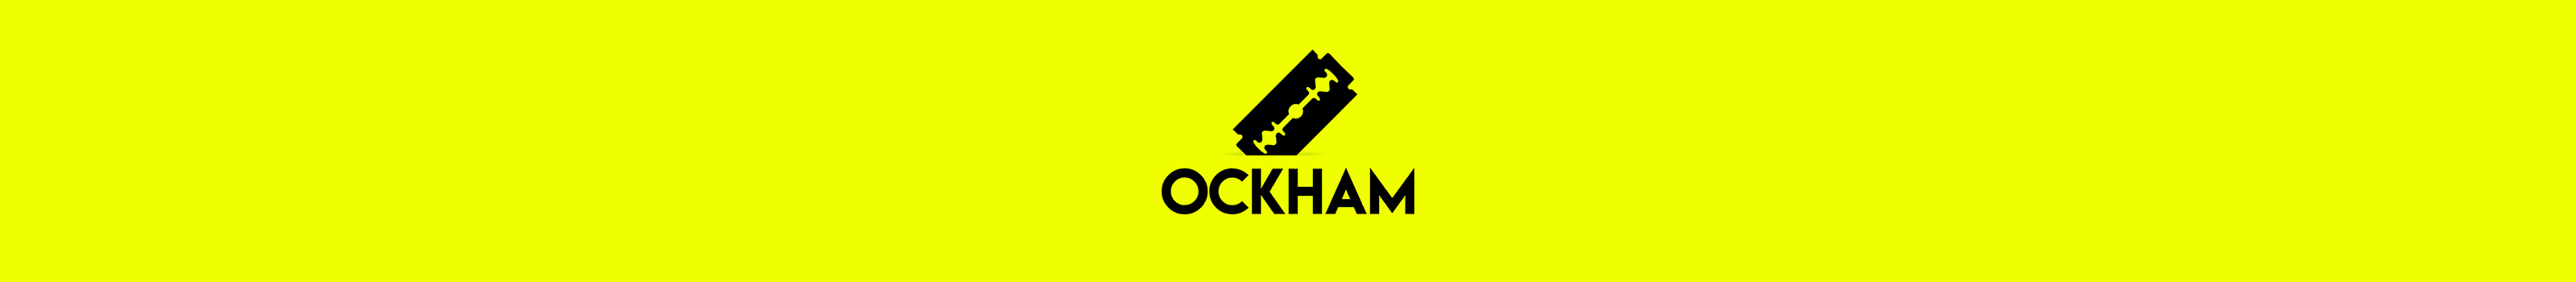 Agence Ockham's profile banner